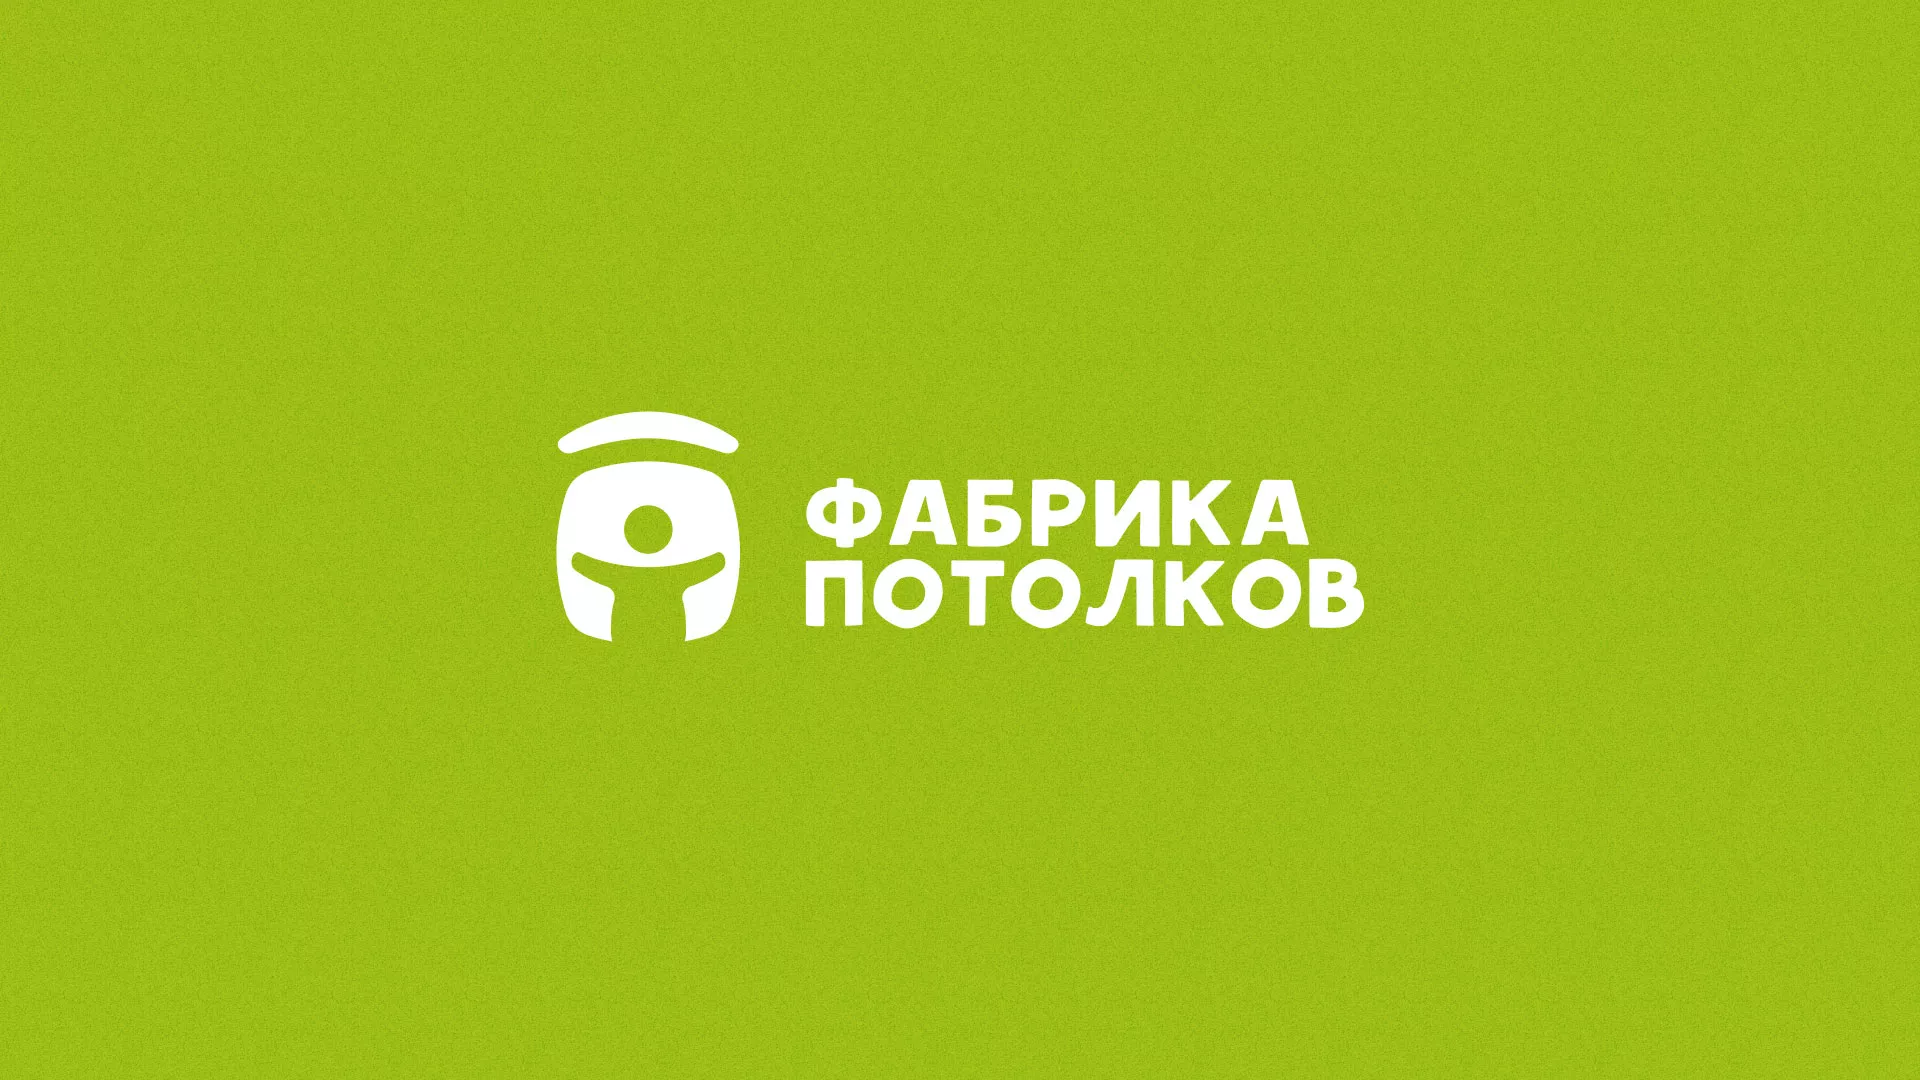 Разработка логотипа для производства натяжных потолков в Александровске-Сахалинском